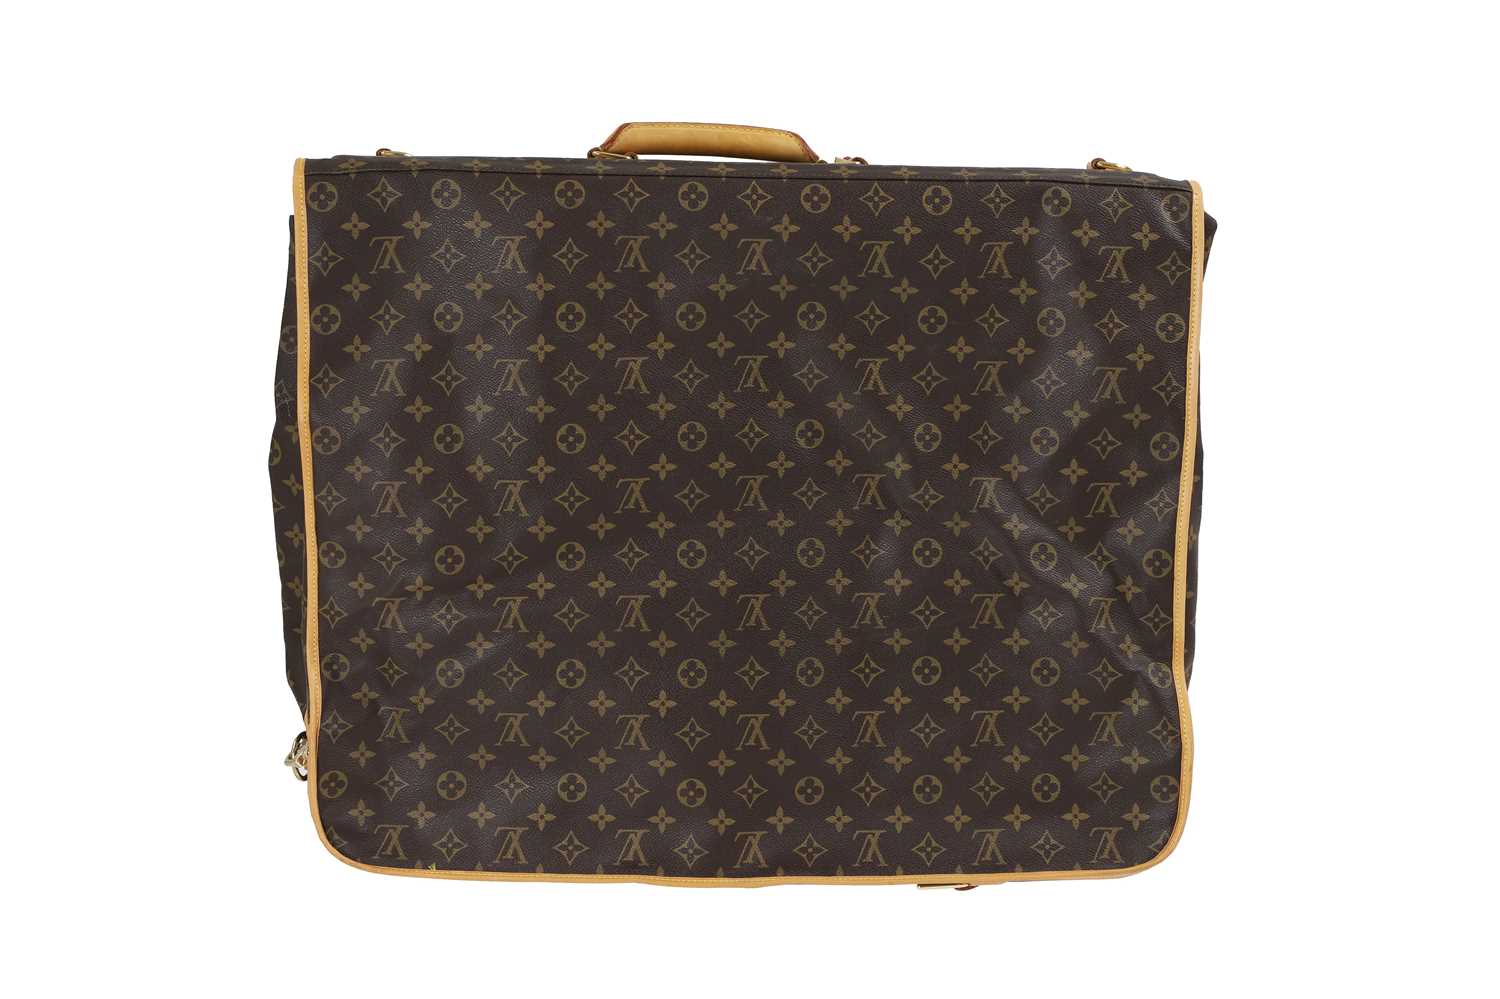 A Louis Vuitton monogrammed canvas suit bag, - Image 2 of 26